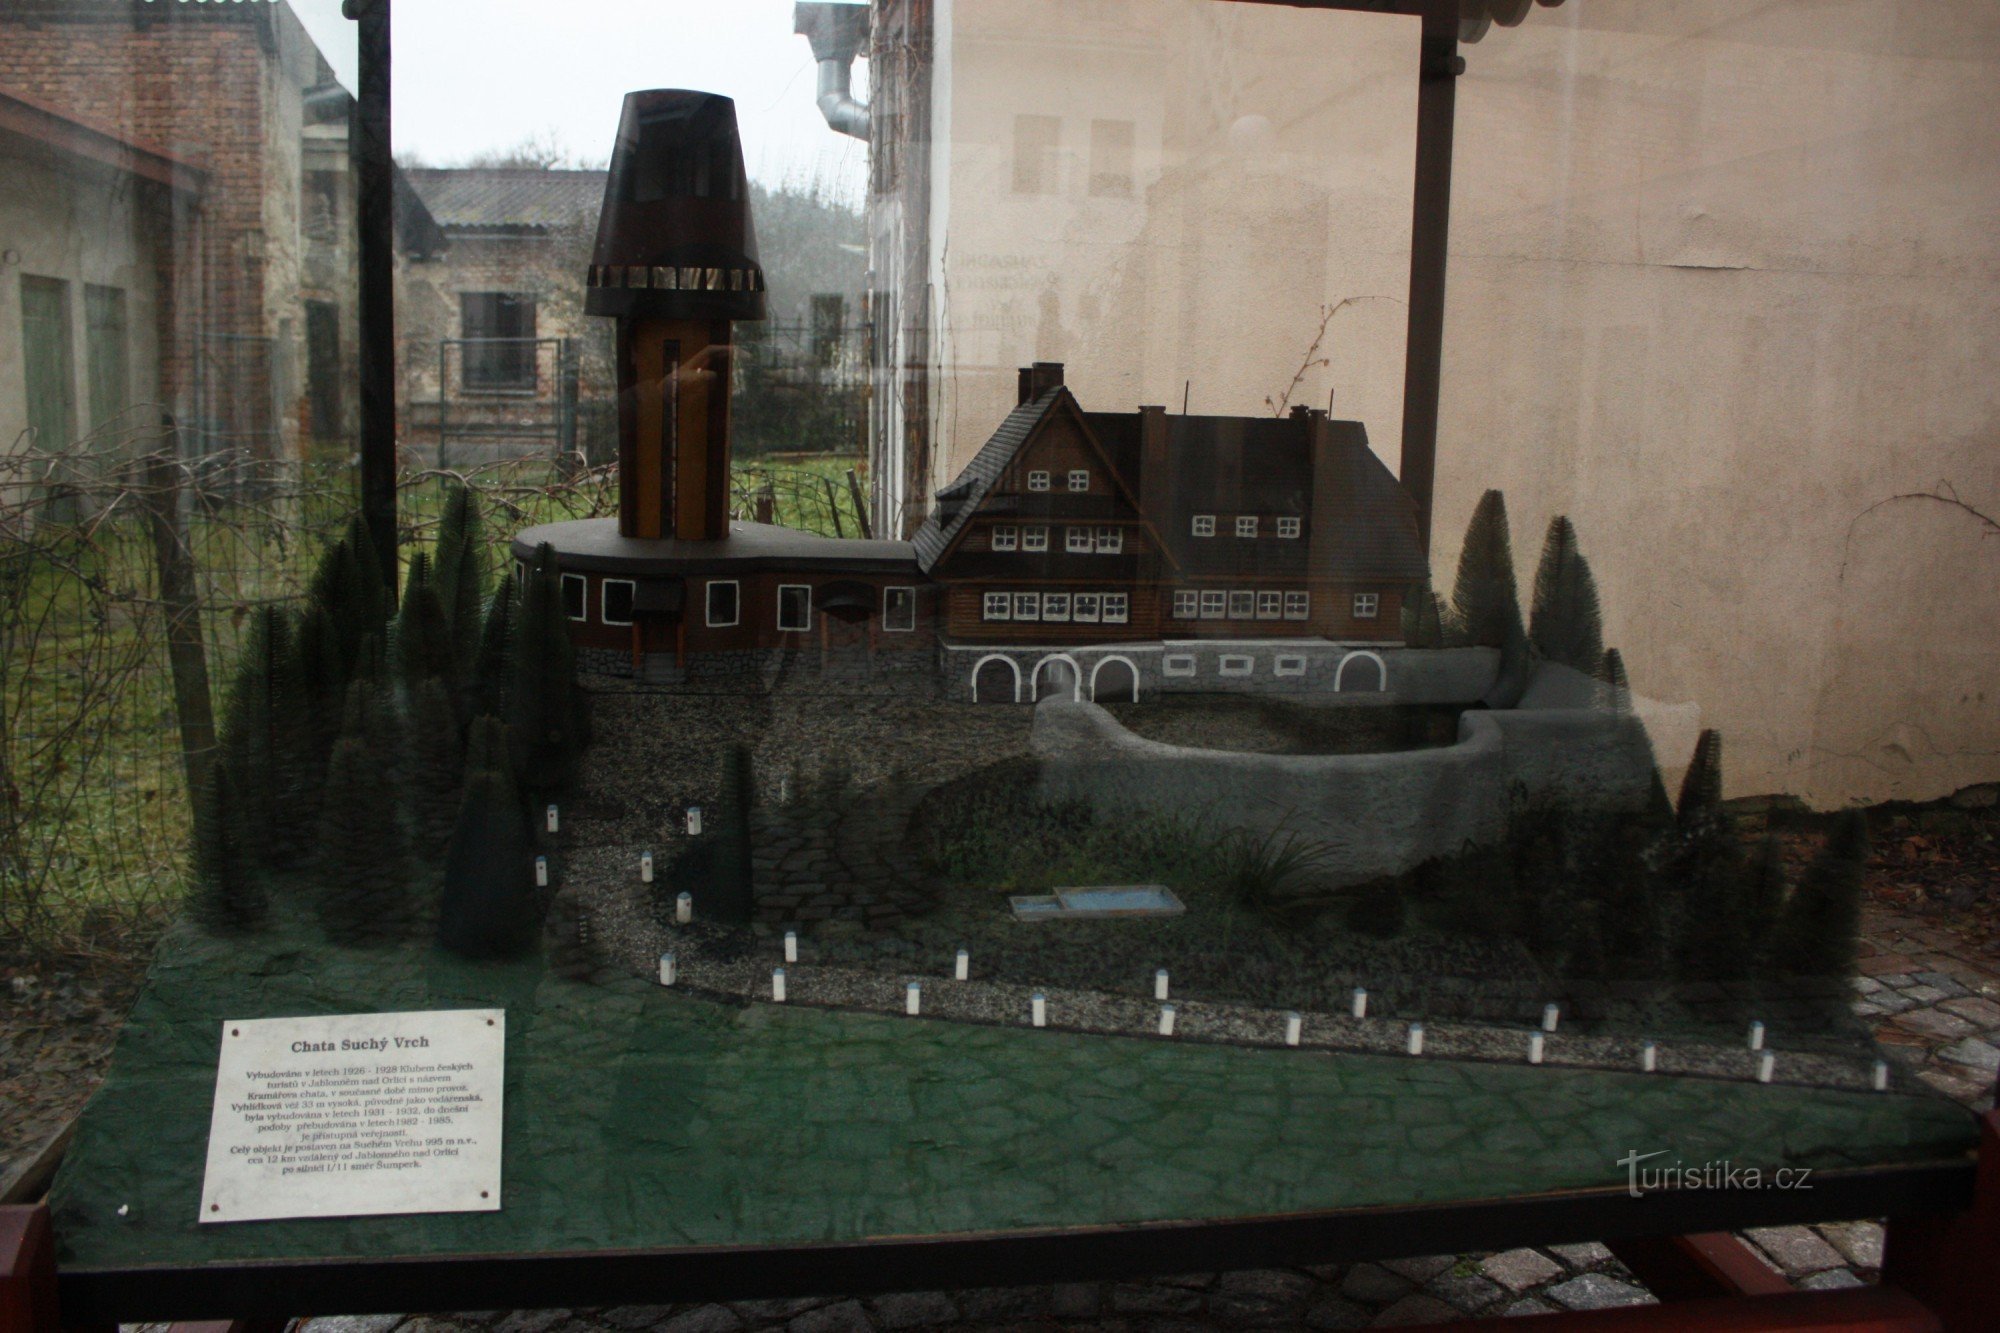 Model af sommerhuset og udsigtstårnet på Suché Vrch i Jablonné i Orlické-bjergene